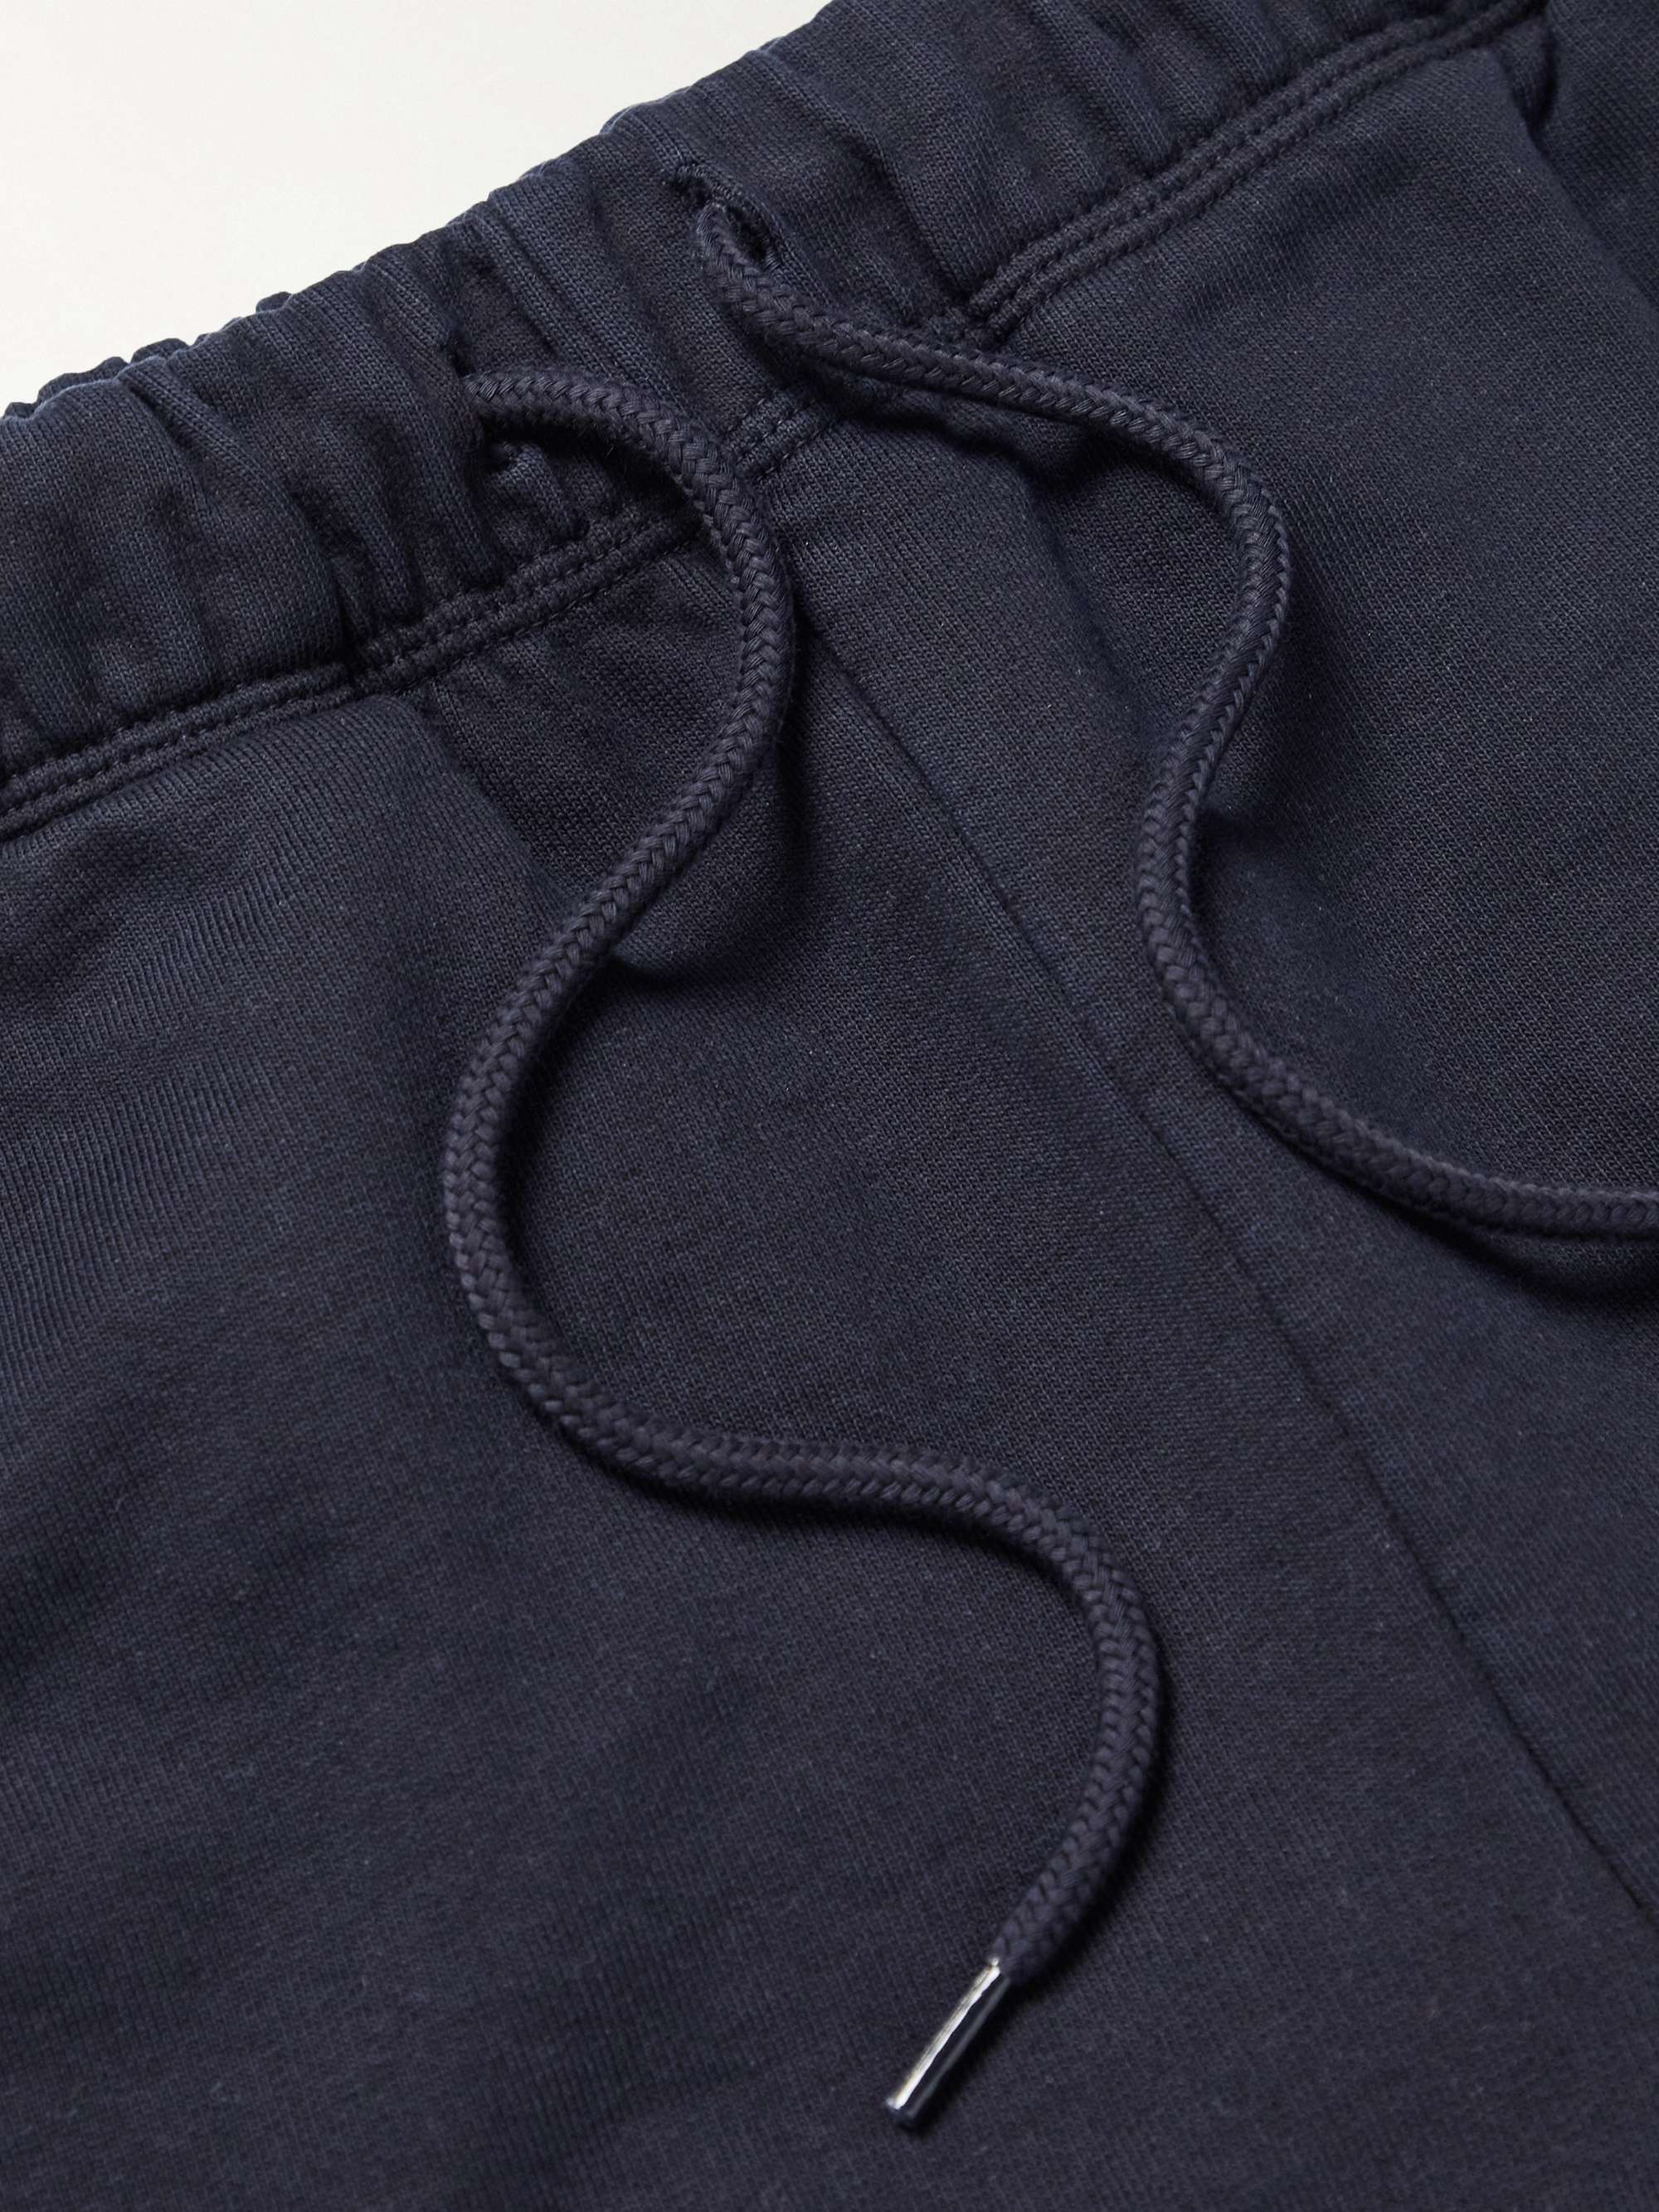 CARHARTT WIP + New Balance Sculpture Center Garment-Dyed Cotton-Blend Jersey Sweatpants